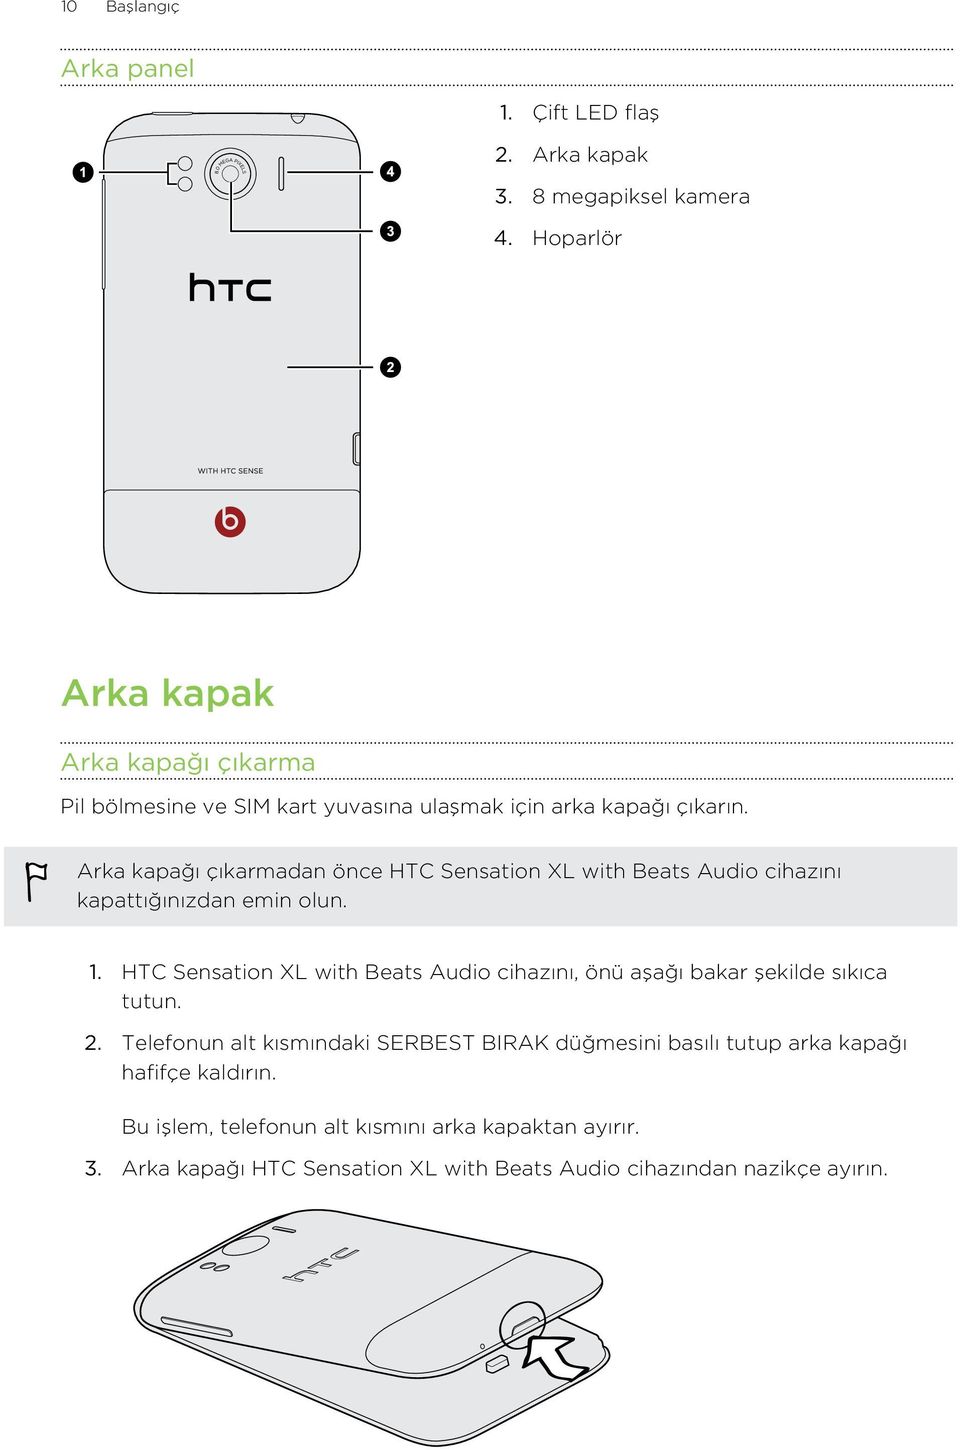 Arka kapağı çıkarmadan önce HTC Sensation XL with Beats Audio cihazını kapattığınızdan emin olun. 1.